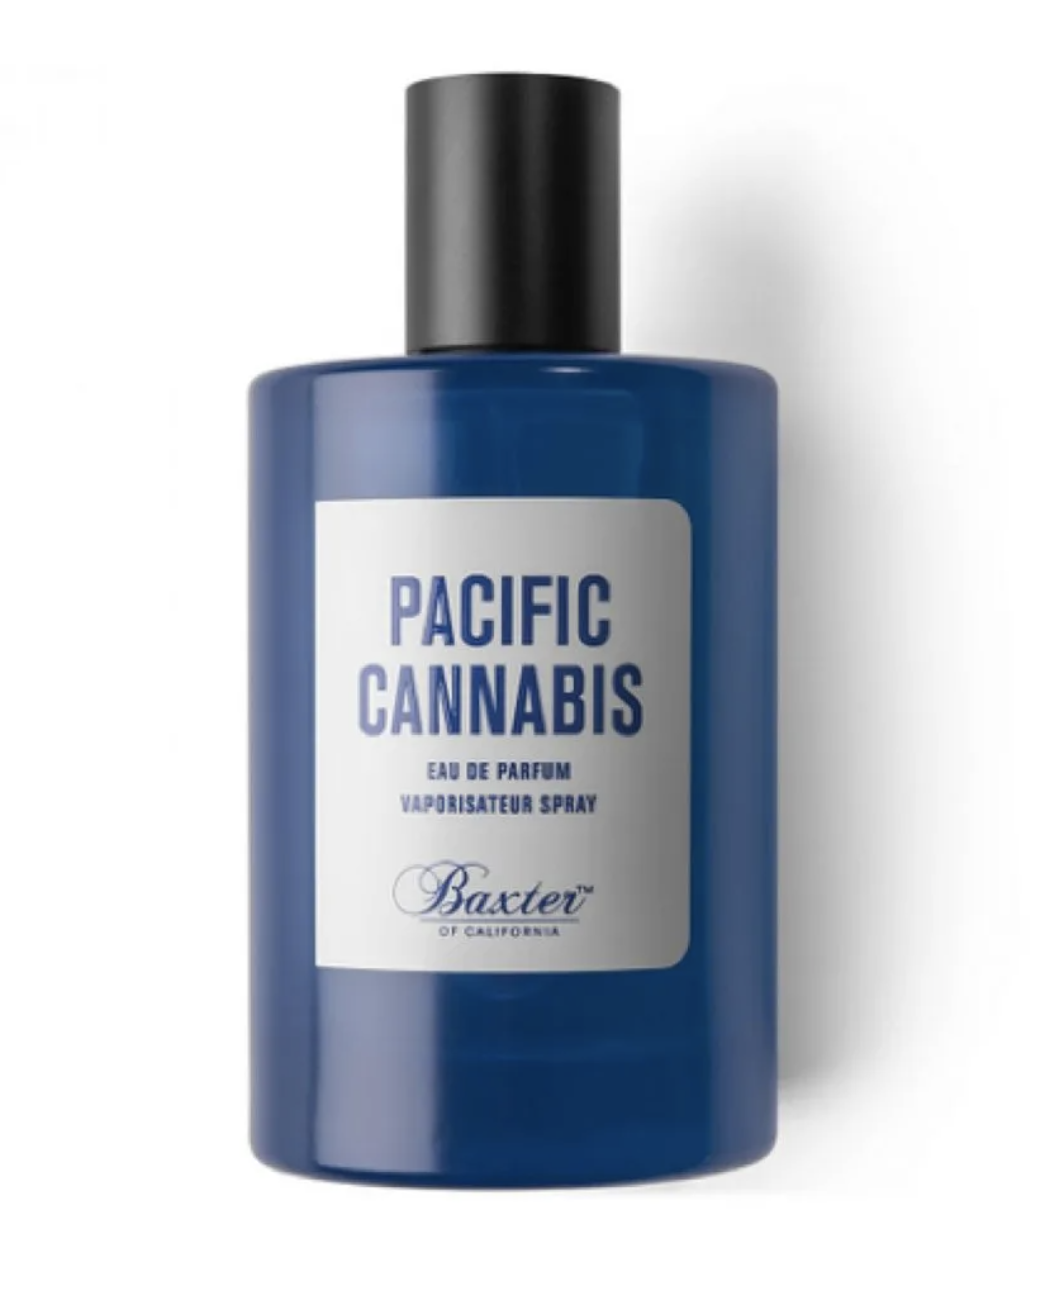 Baxter Pacific Cannabis 100ml